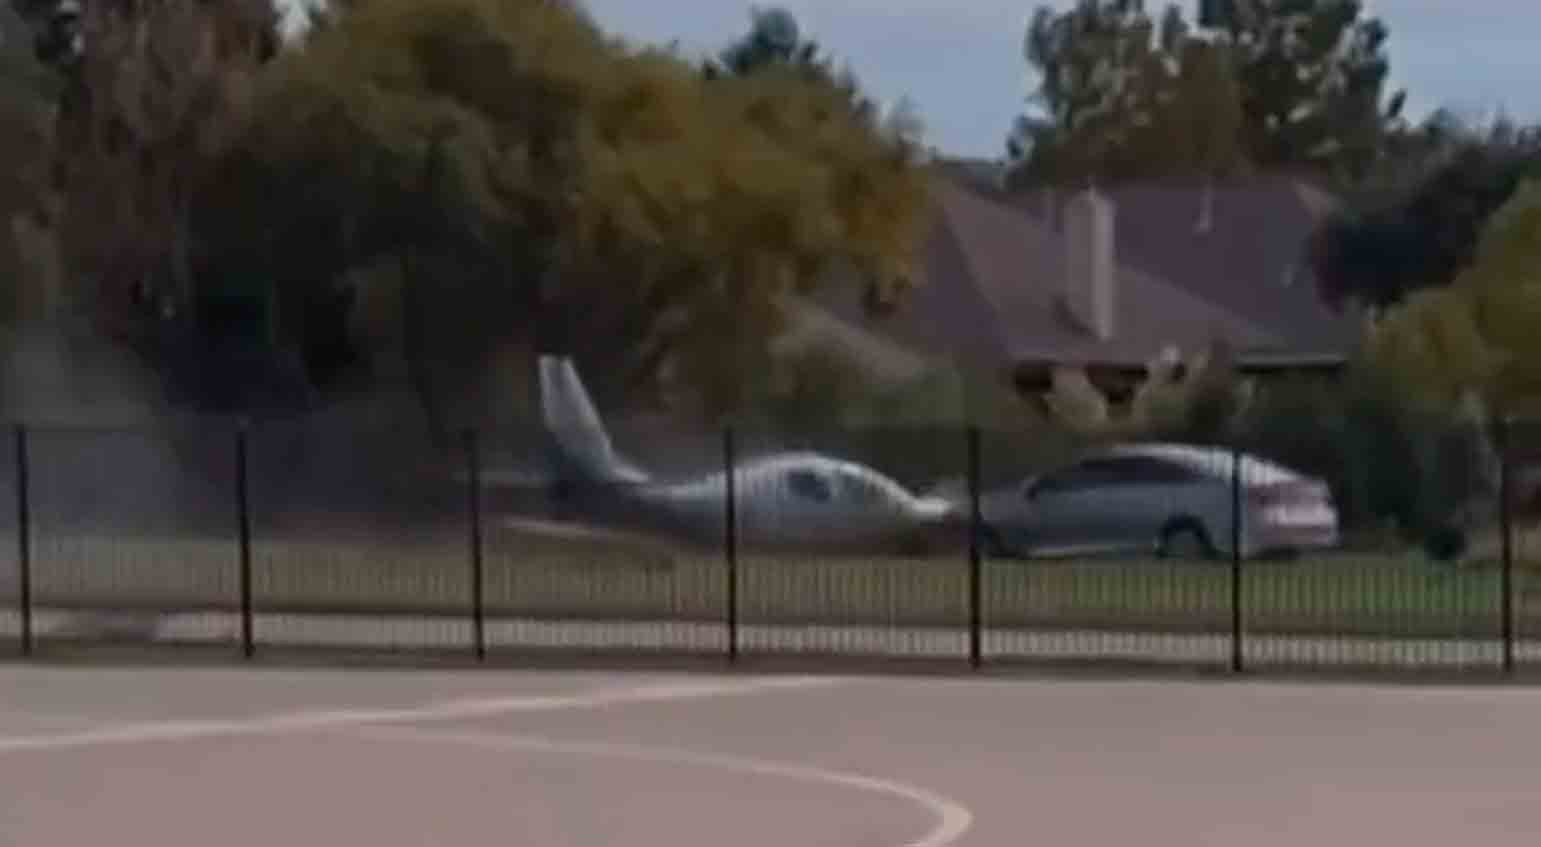 Το βίντεο δείχνει τη στιγμή που αεροπλάνο συγκρούεται με αυτοκίνητο μετά από αναγκαστική προσγείωση. Φωτογραφία και βίντεο: Αναπαραγωγή Twitter @nexta_tv